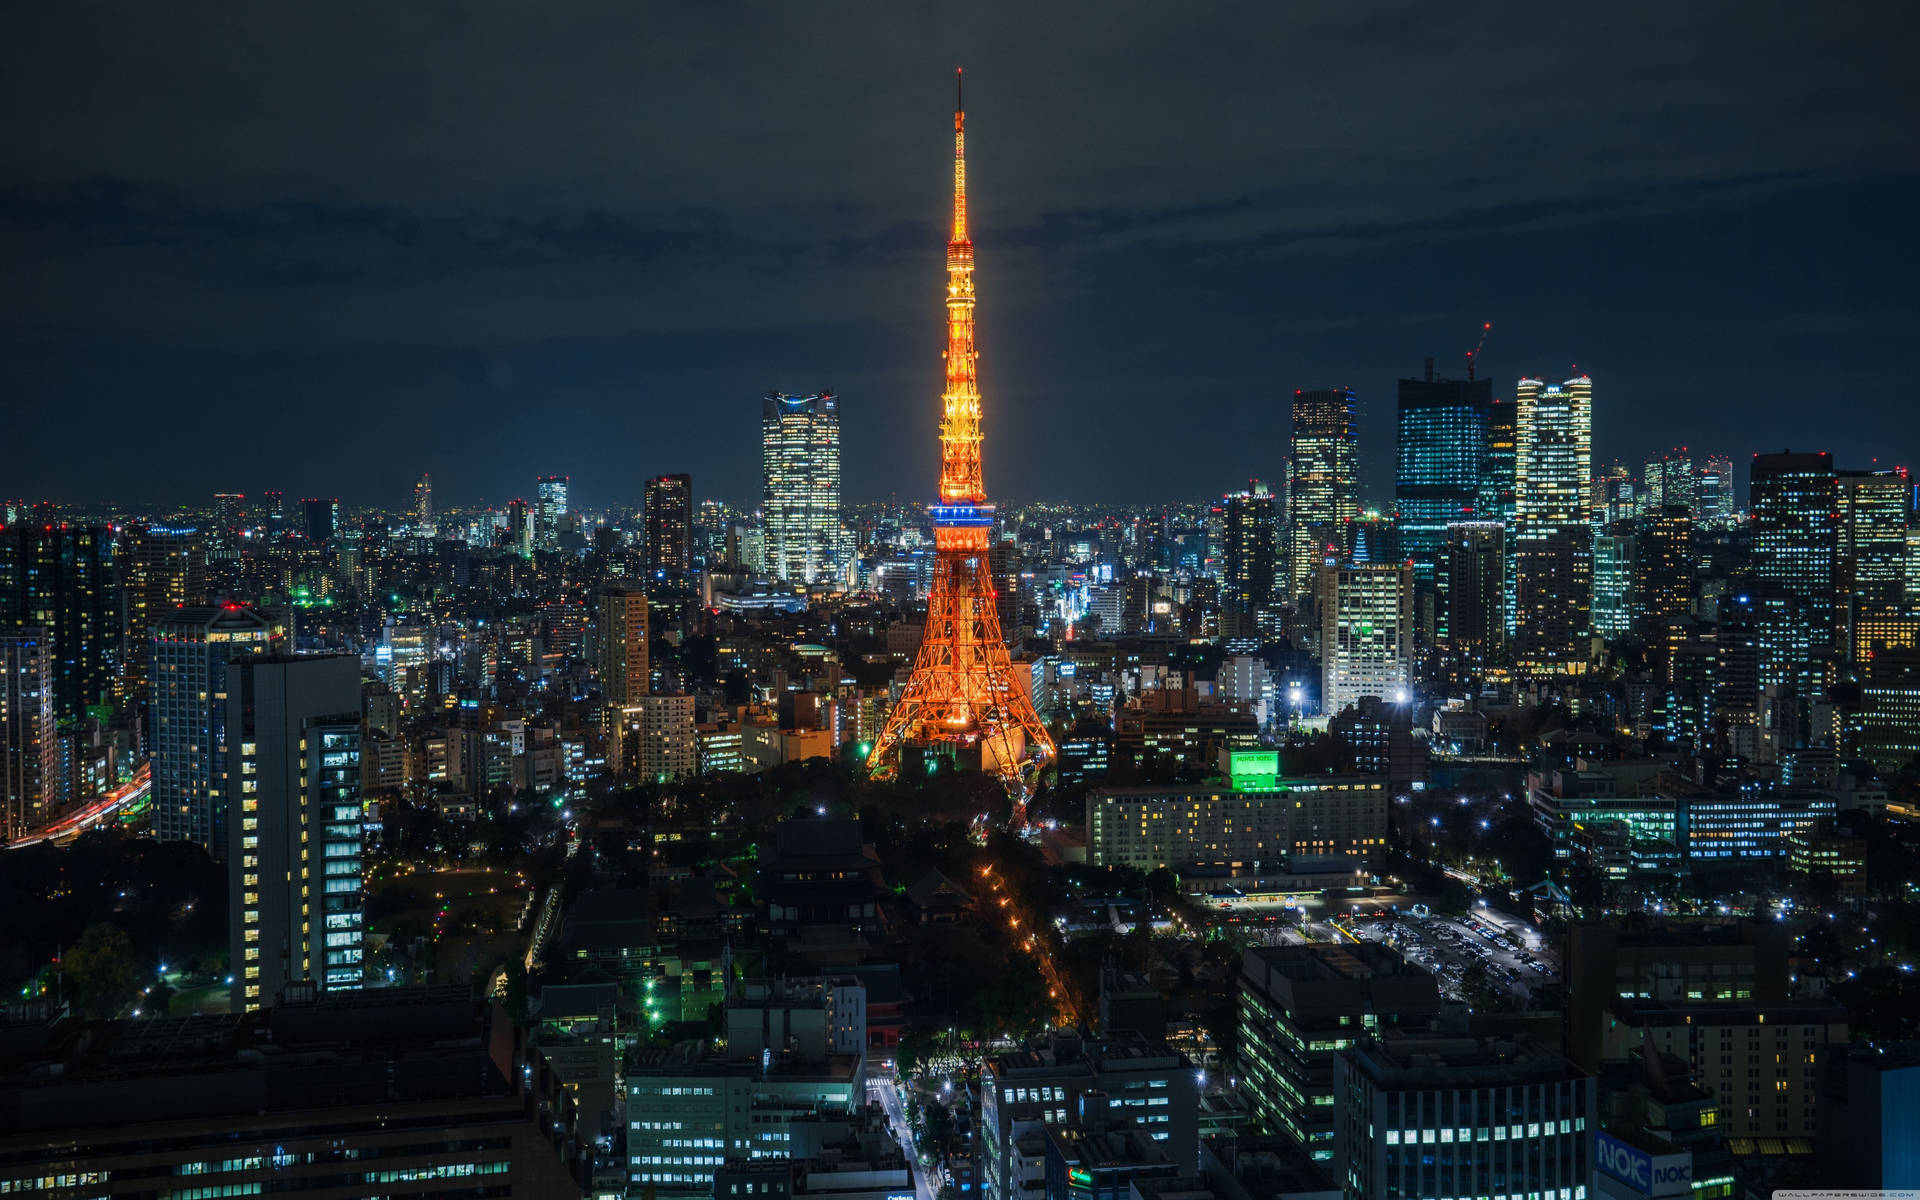 Tokyo Tower At Night Wallpaper